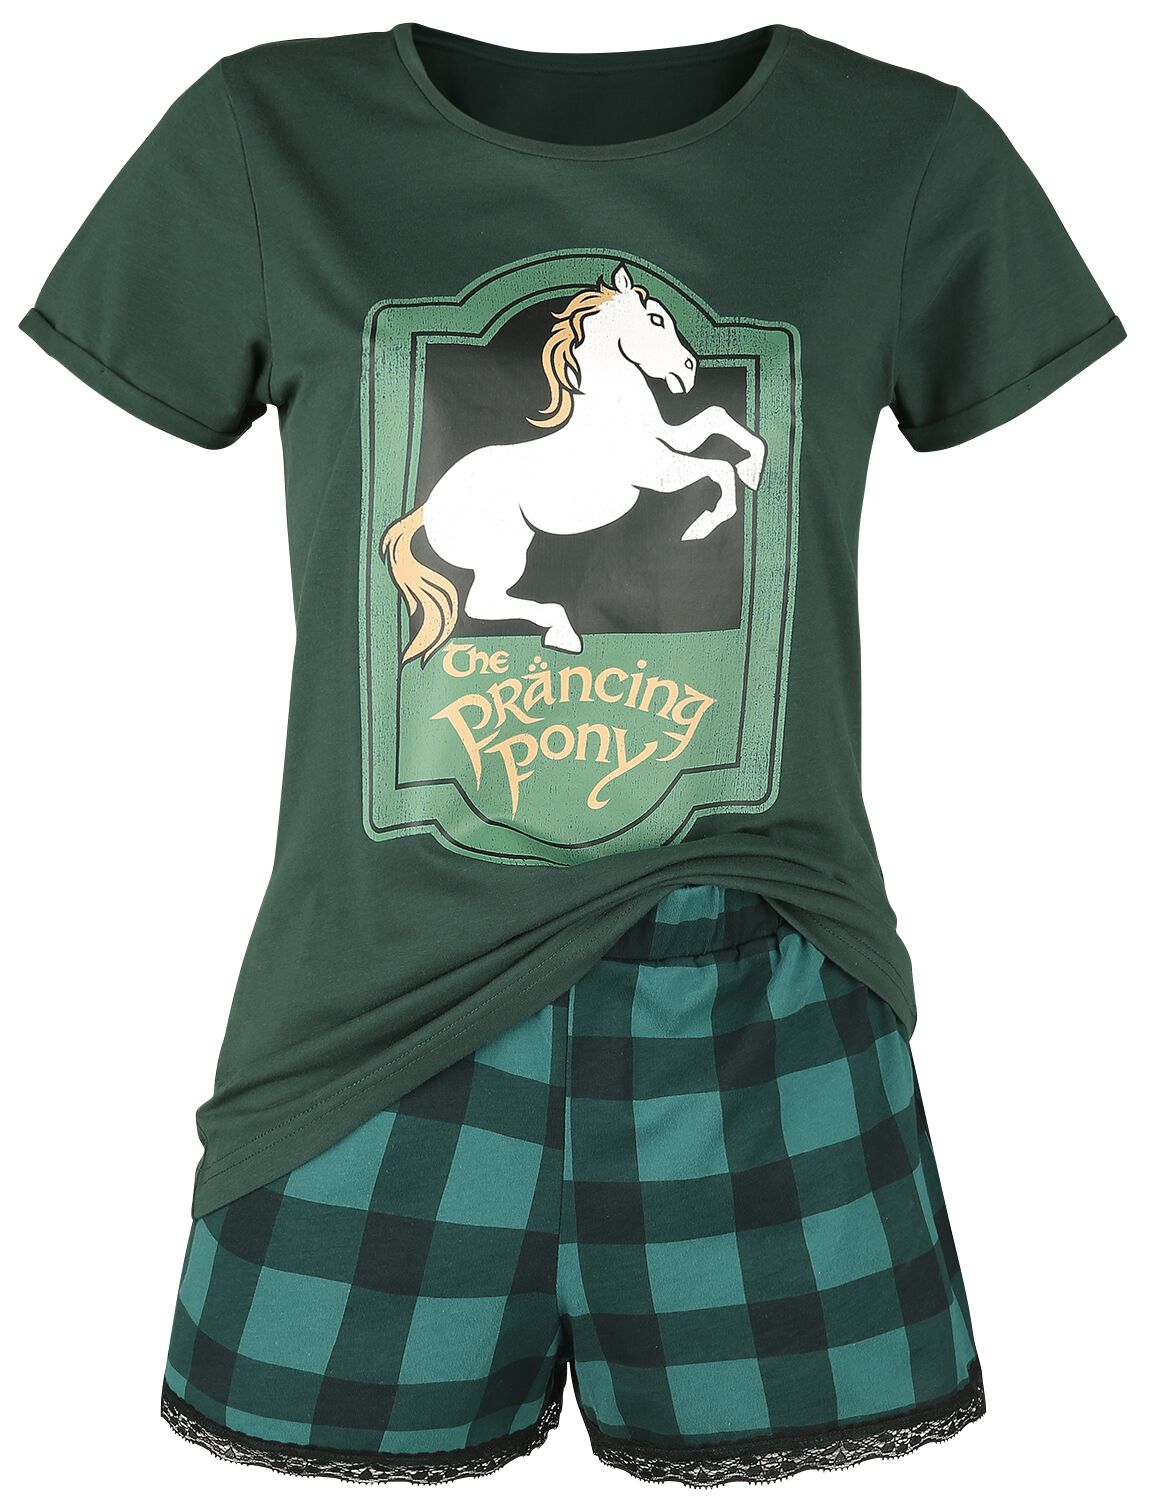 Der Herr der Ringe Schlafanzug - Prancing Pony - XS bis S - für Damen - Größe S - dunkelgrün  - EMP exklusives Merchandise!